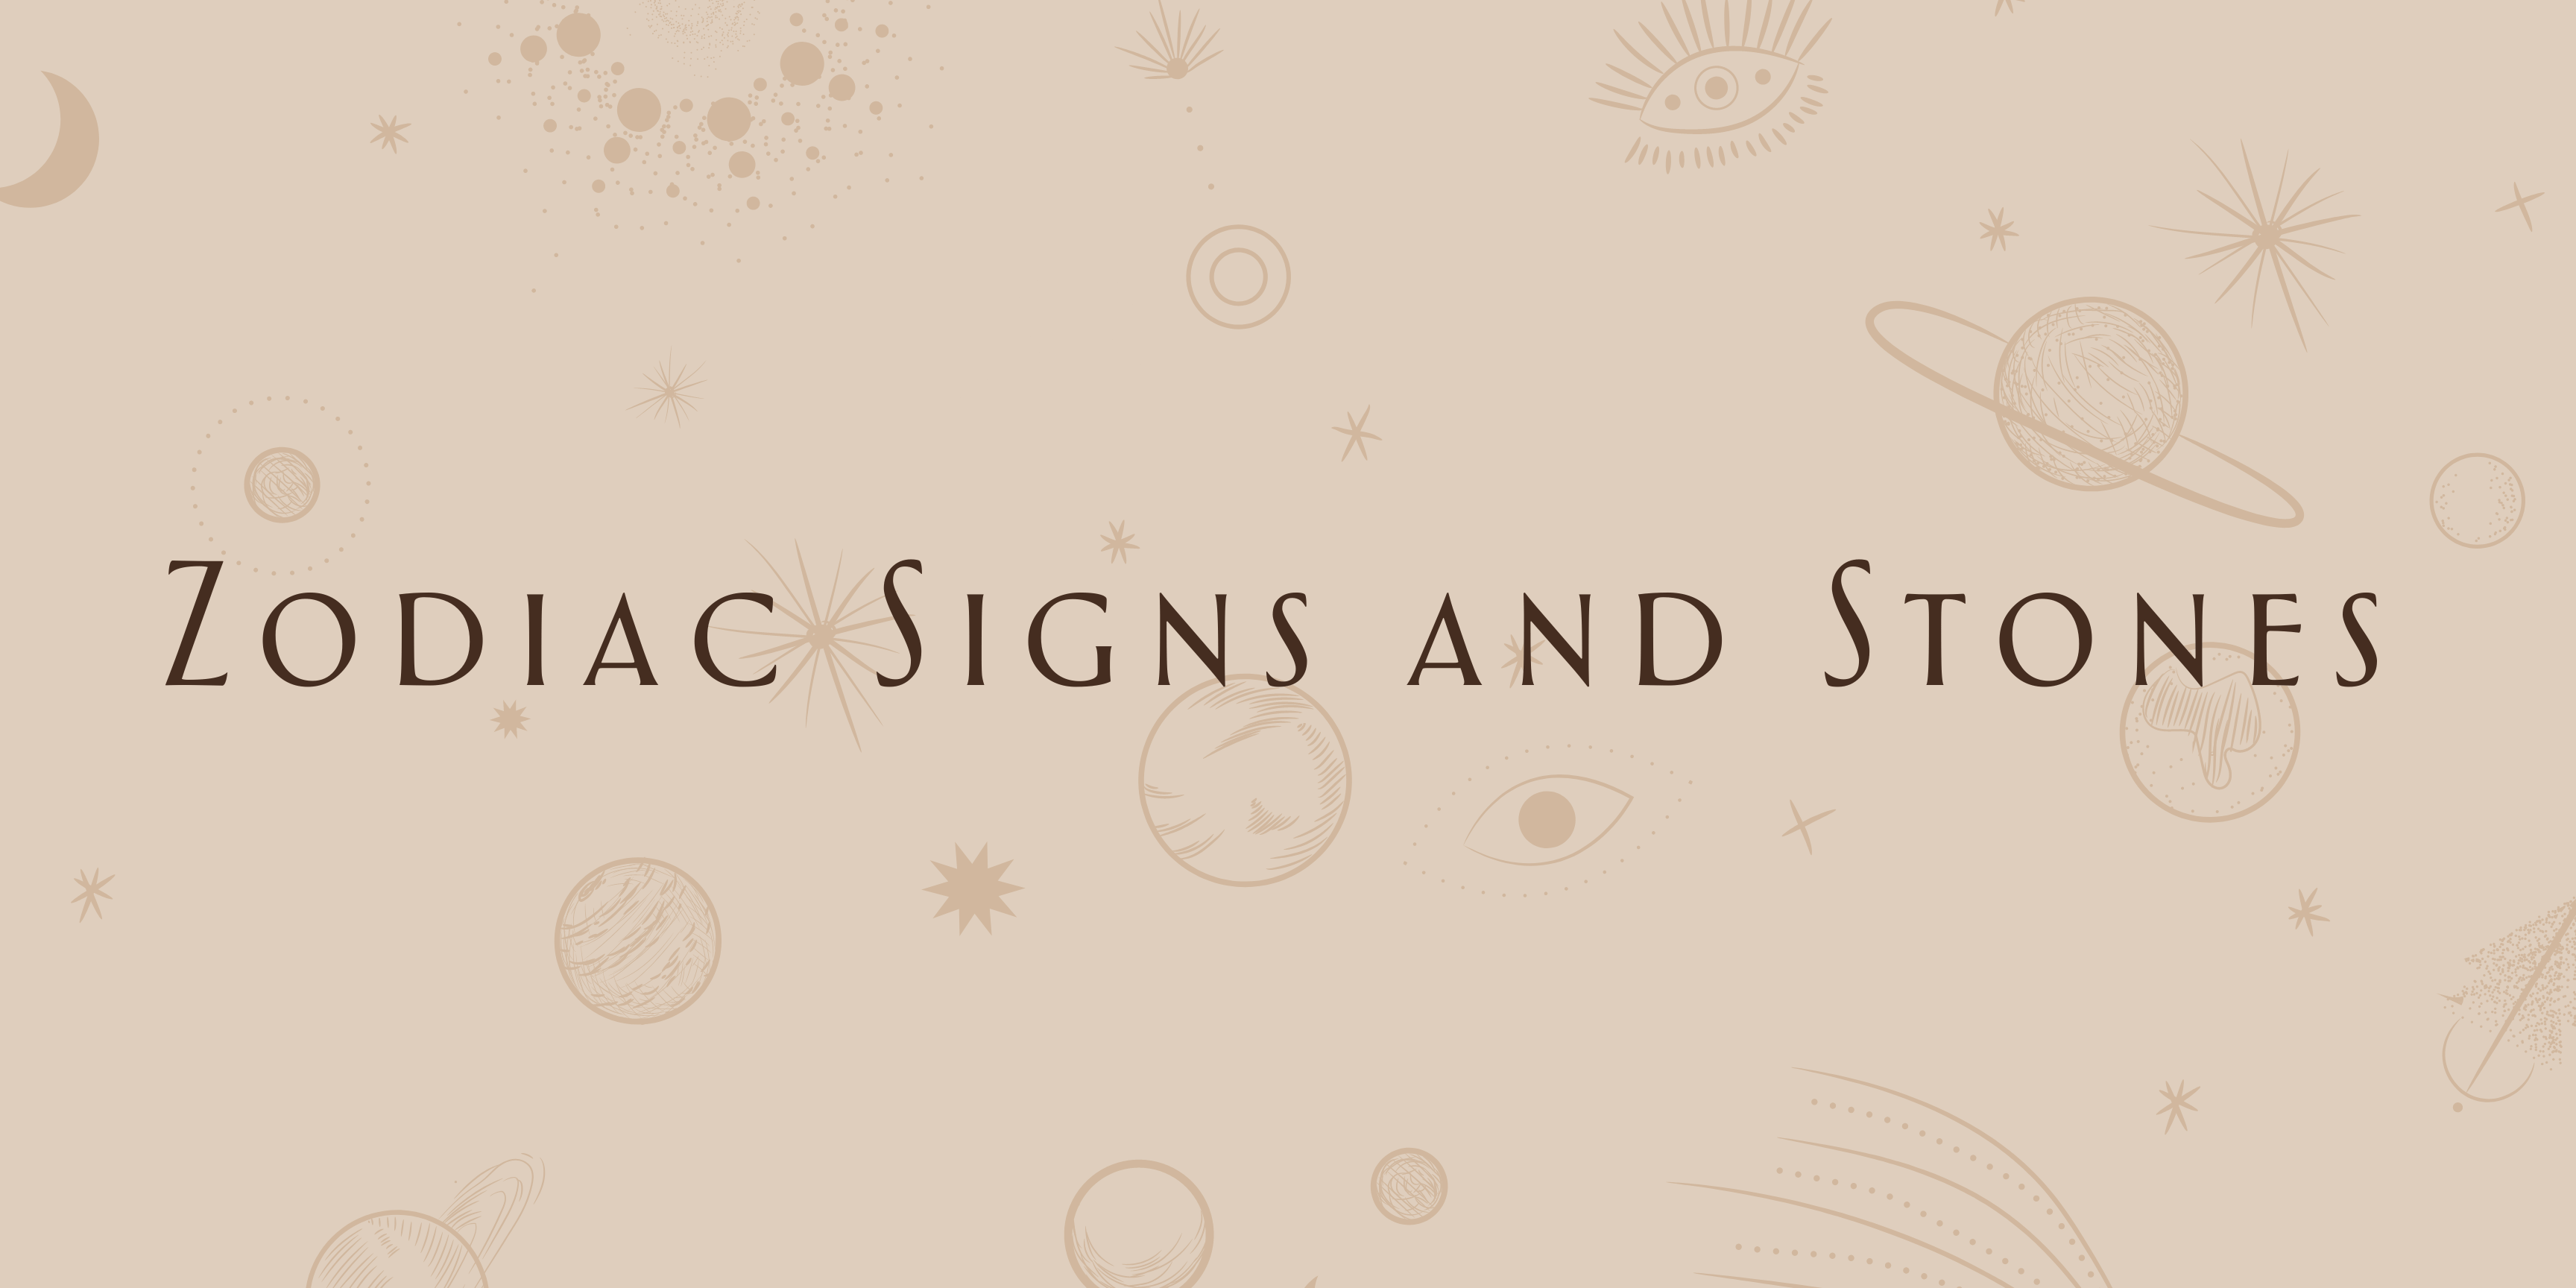 Zodiac Signs and Alternative Birthstone